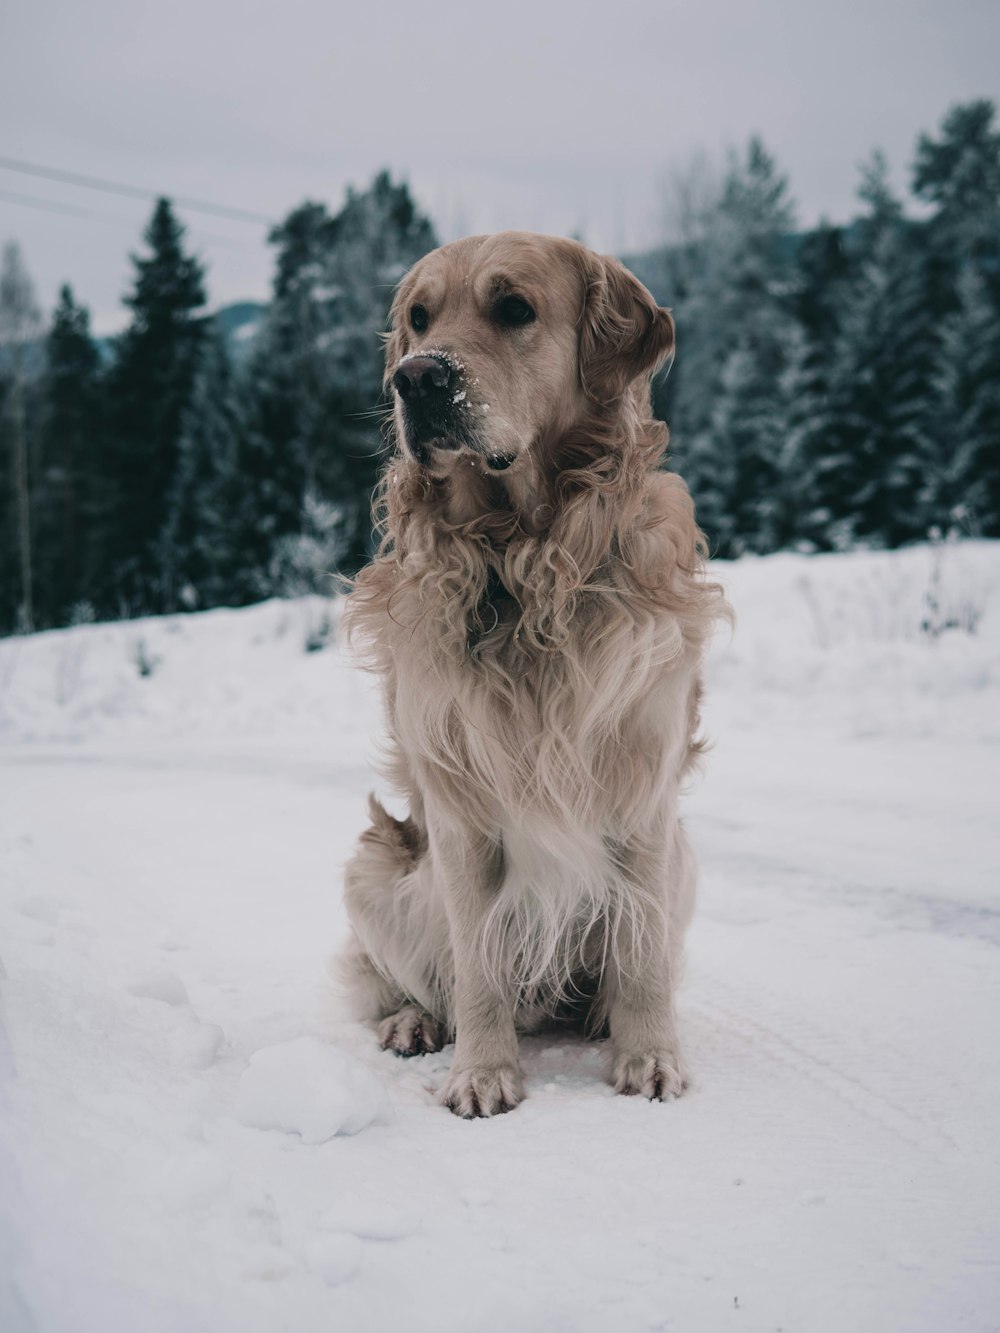 cane marrone in piedi sulla neve vicino agli alberi verdi